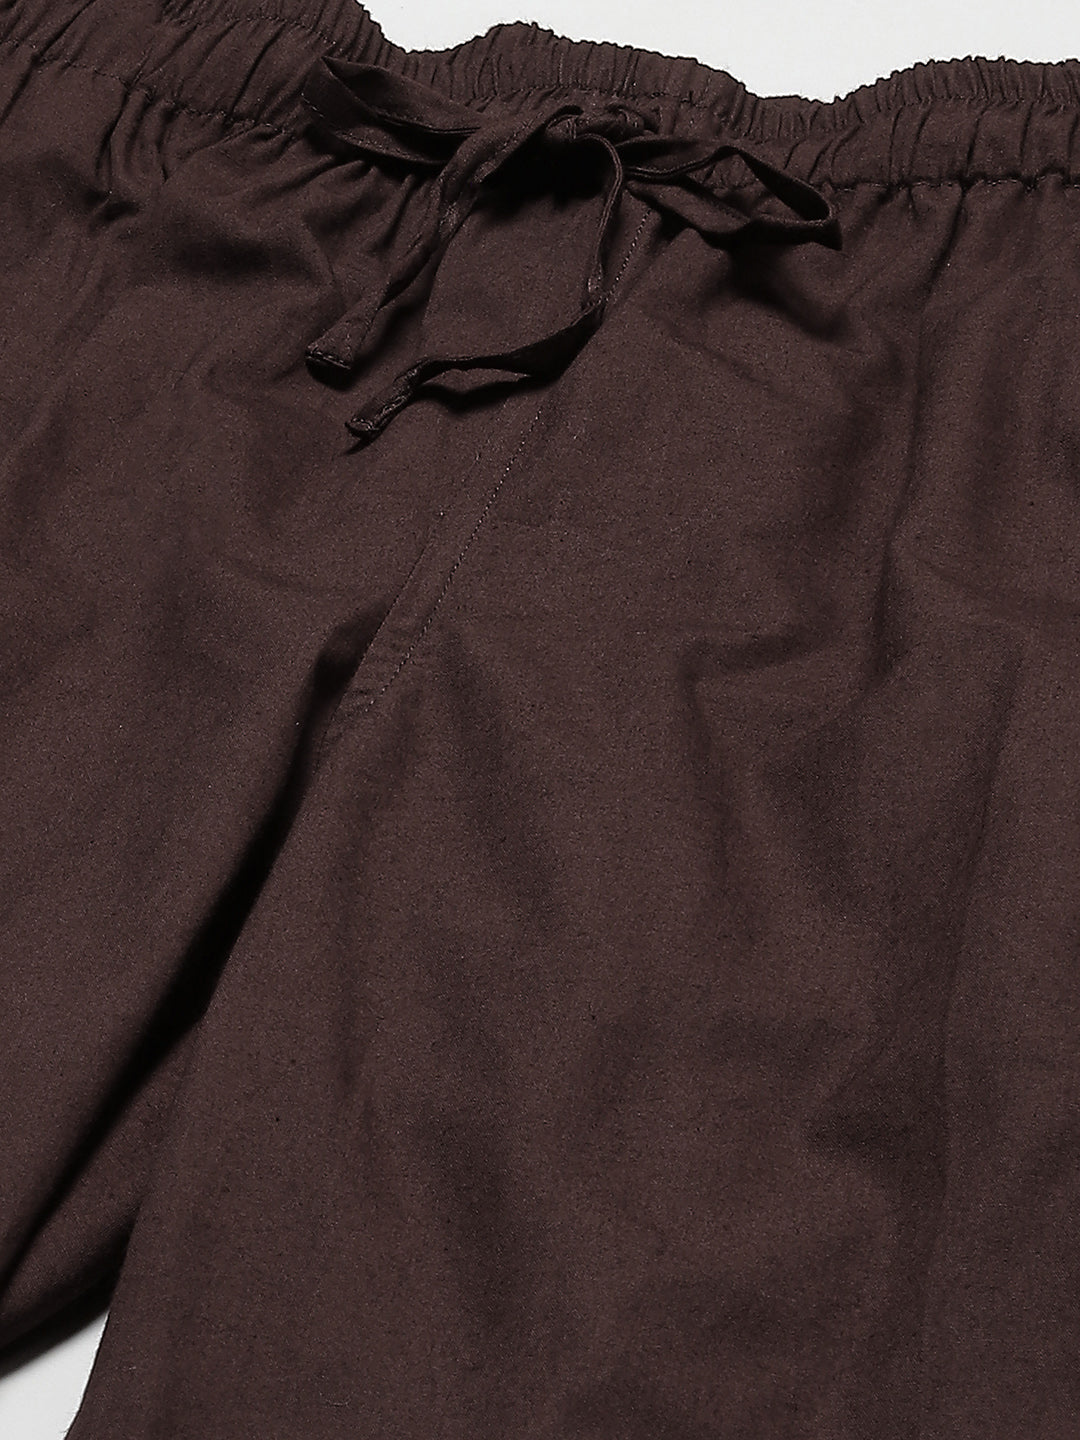 Combo Pack of 2: Deep Brown & Beige Solid Cotton Pyjamas